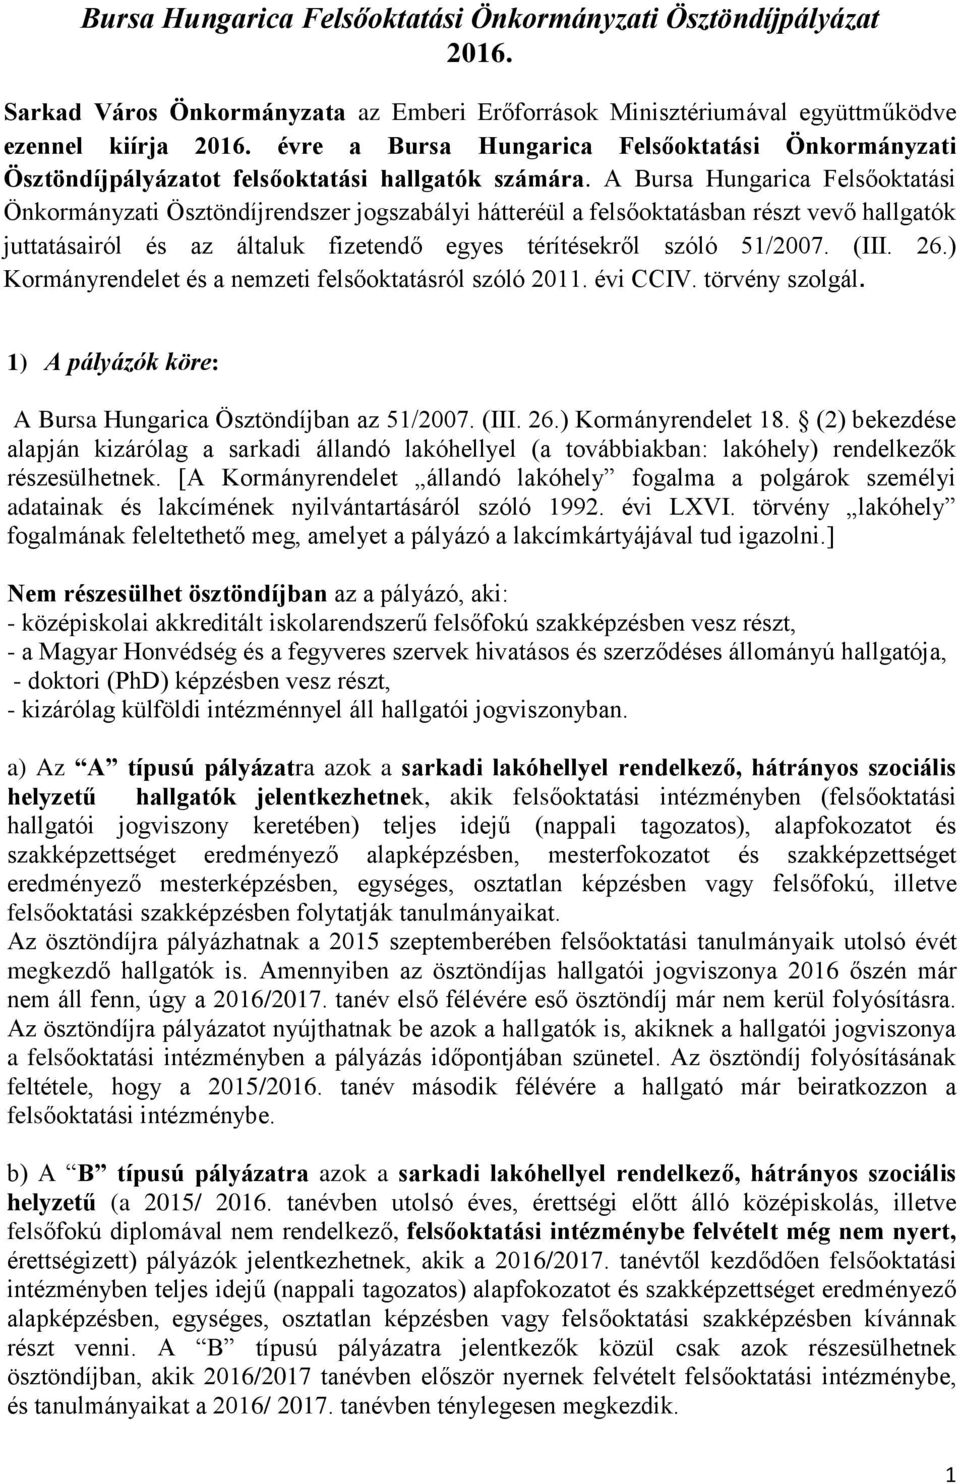 A Bursa Hungarica Felsőoktatási Önkormányzati Ösztöndíjrendszer jogszabályi hátteréül a felsőoktatásban részt vevő hallgatók juttatásairól és az általuk fizetendő egyes térítésekről szóló 51/2007.